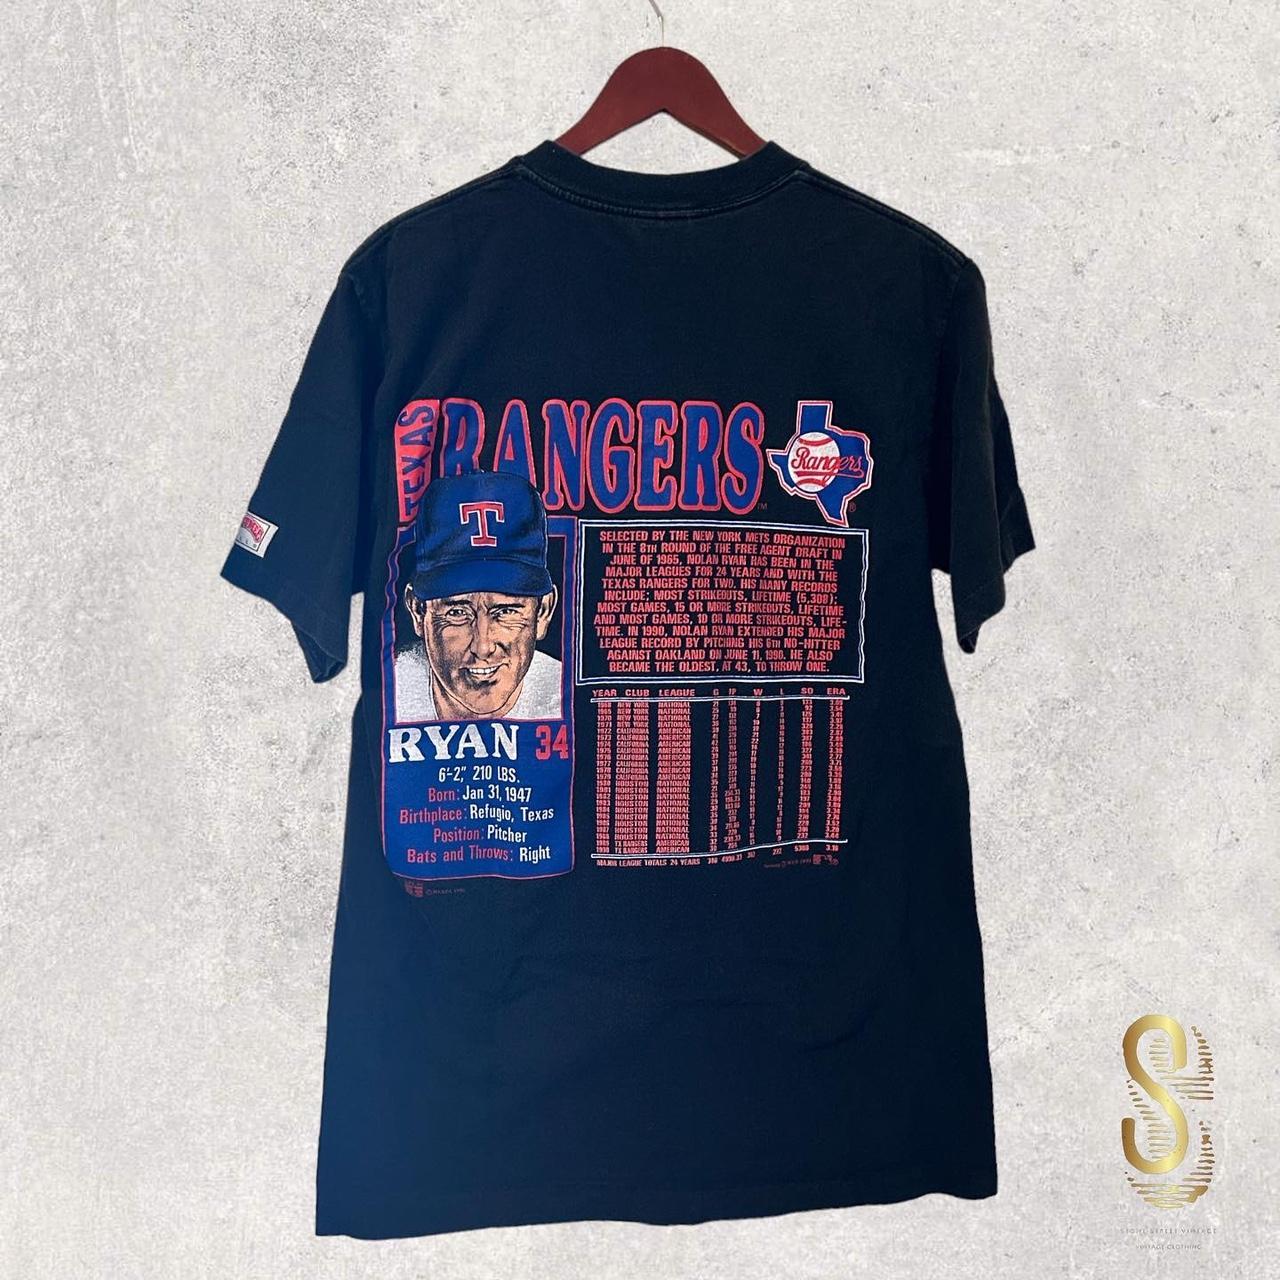 Vintage Nolan Ryan Texas Rangers Nutmeg Graphic T-Shirt Large